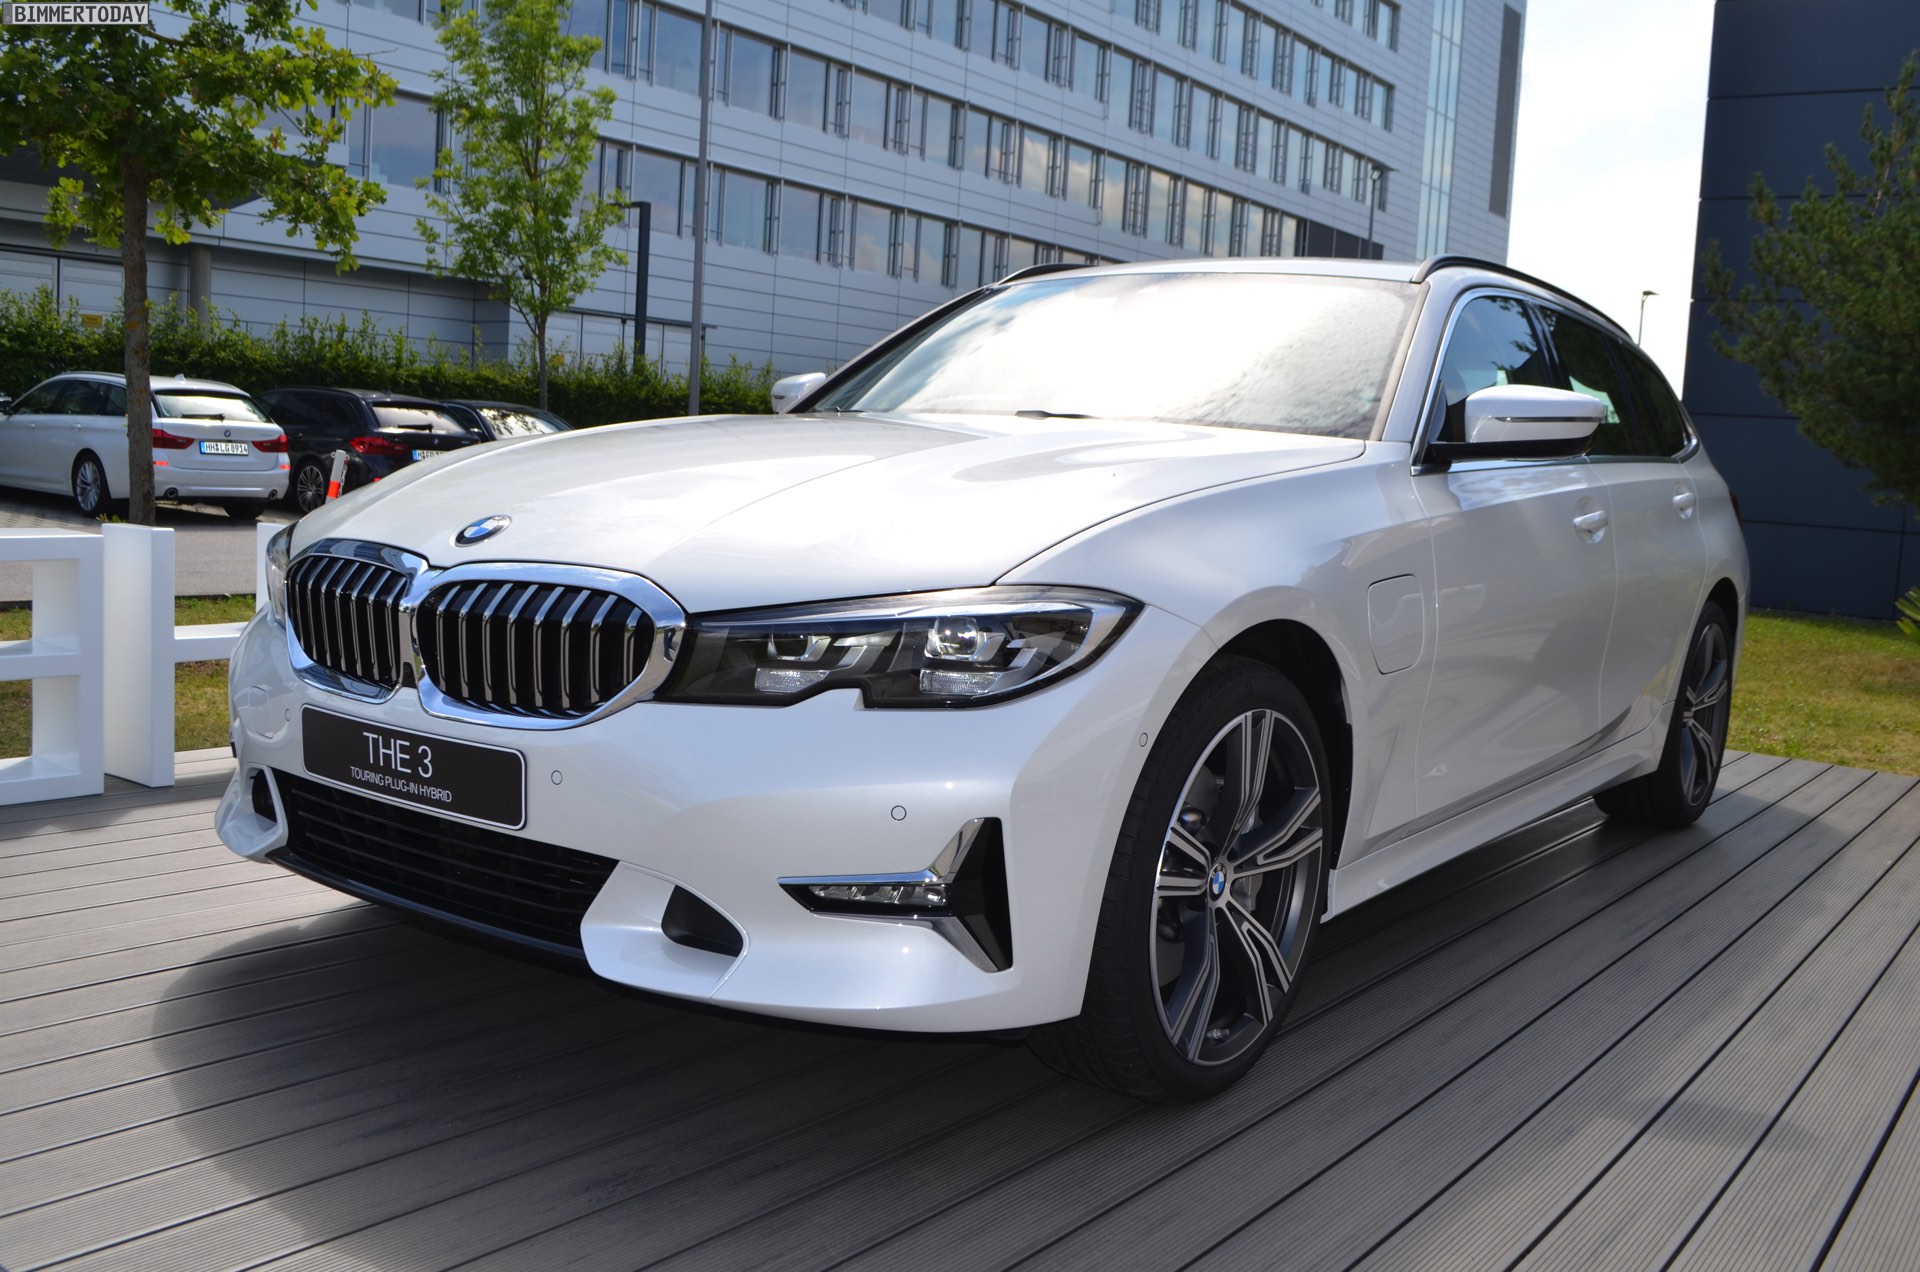 2020-BMW-330e-Touring-G21-3er-Plug-in-Hybrid-02.jpg